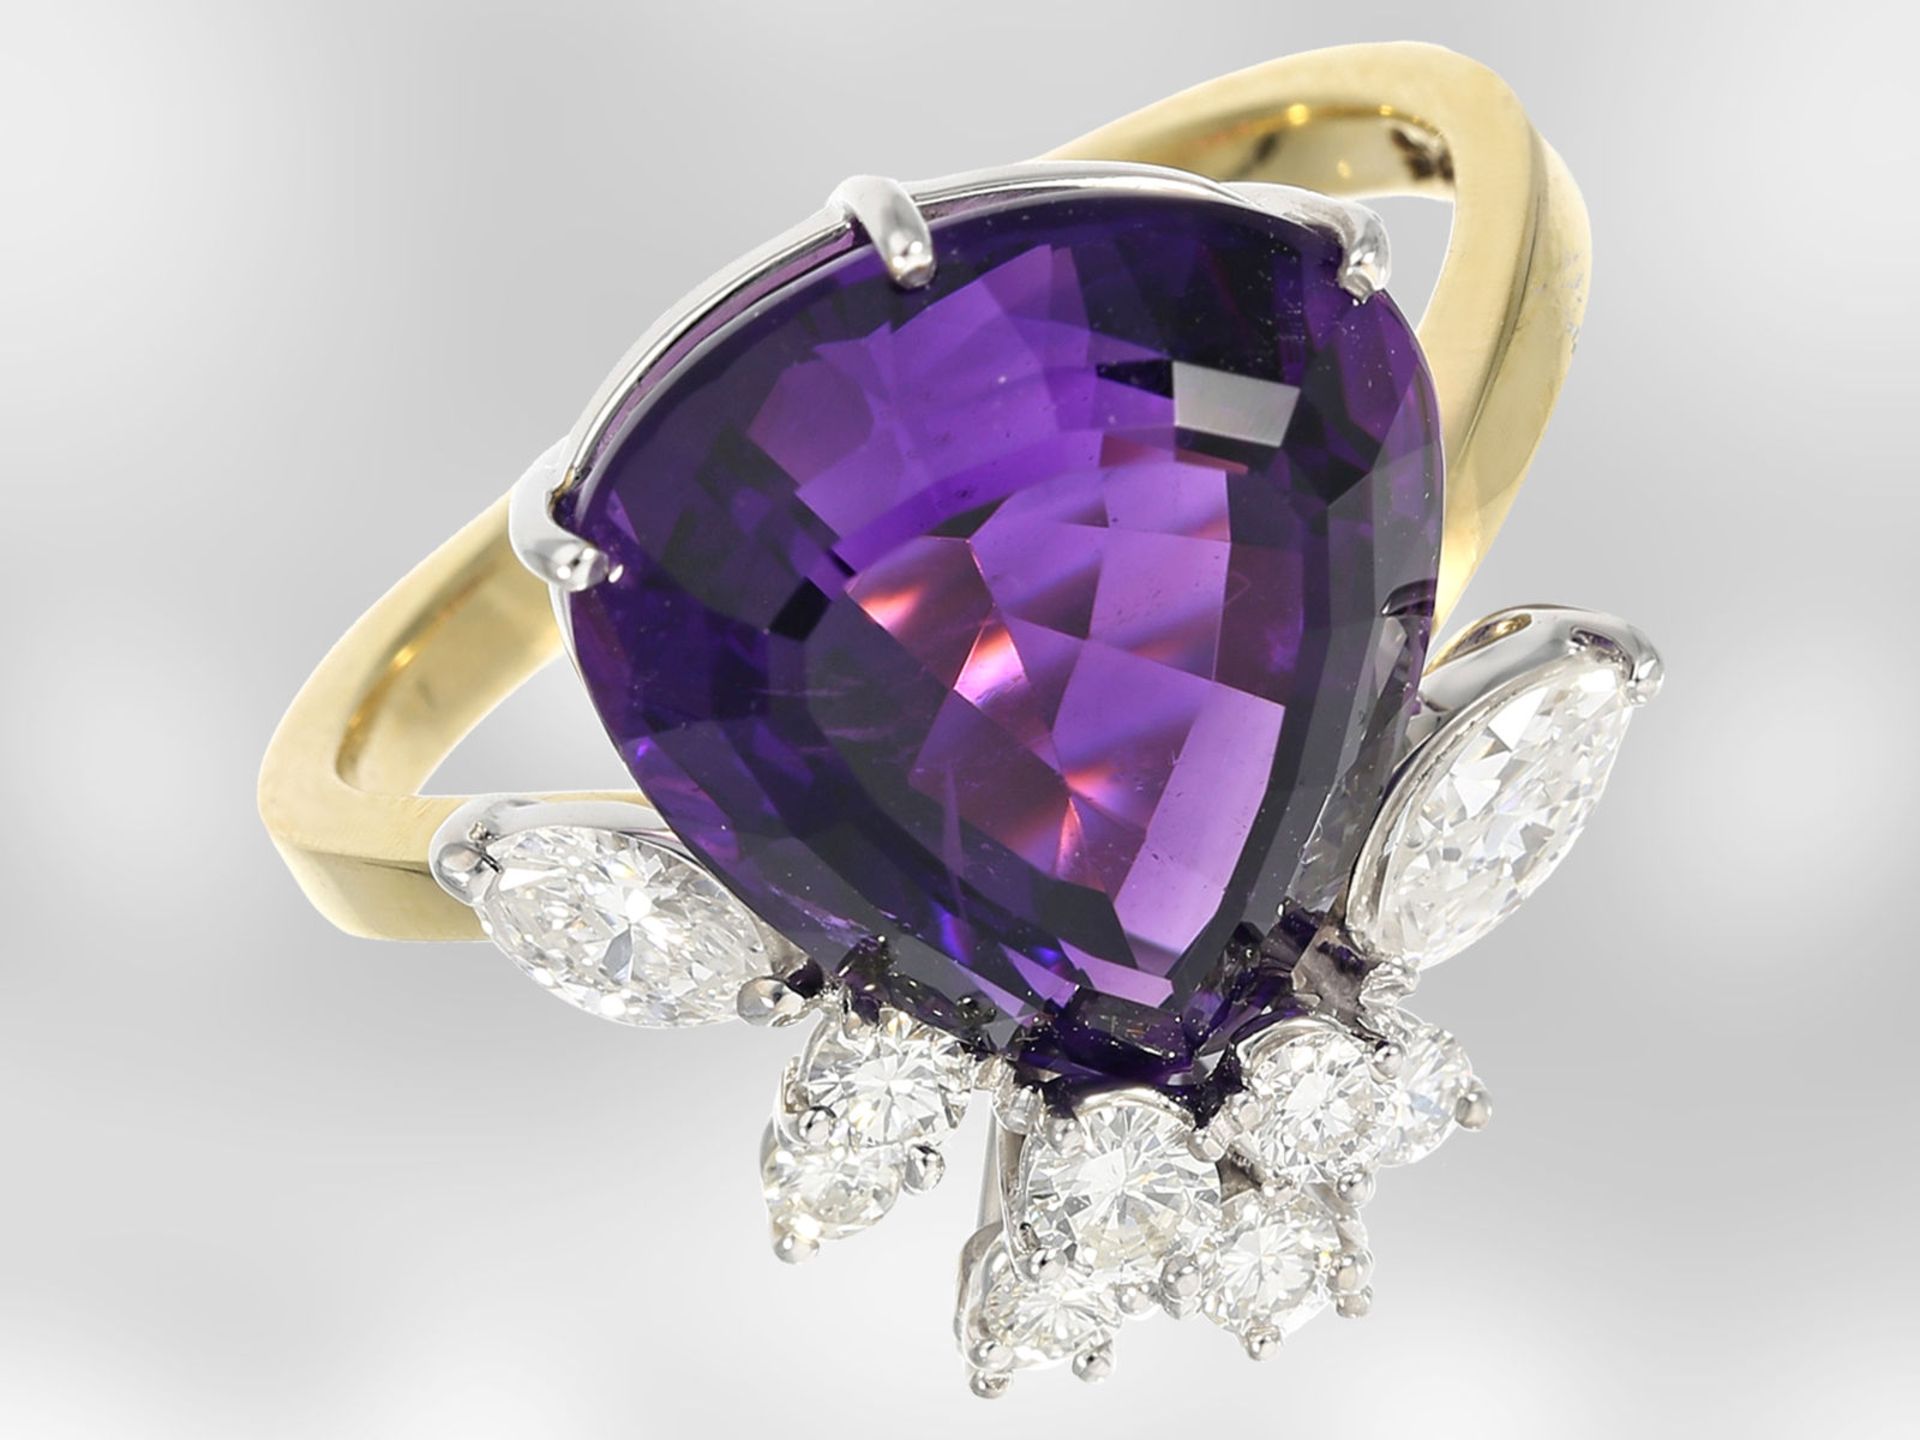 Ring: ausgefallener, neuwertiger Damenring mit feinem Diamantbesatz und großem Amethyst, insgesamt